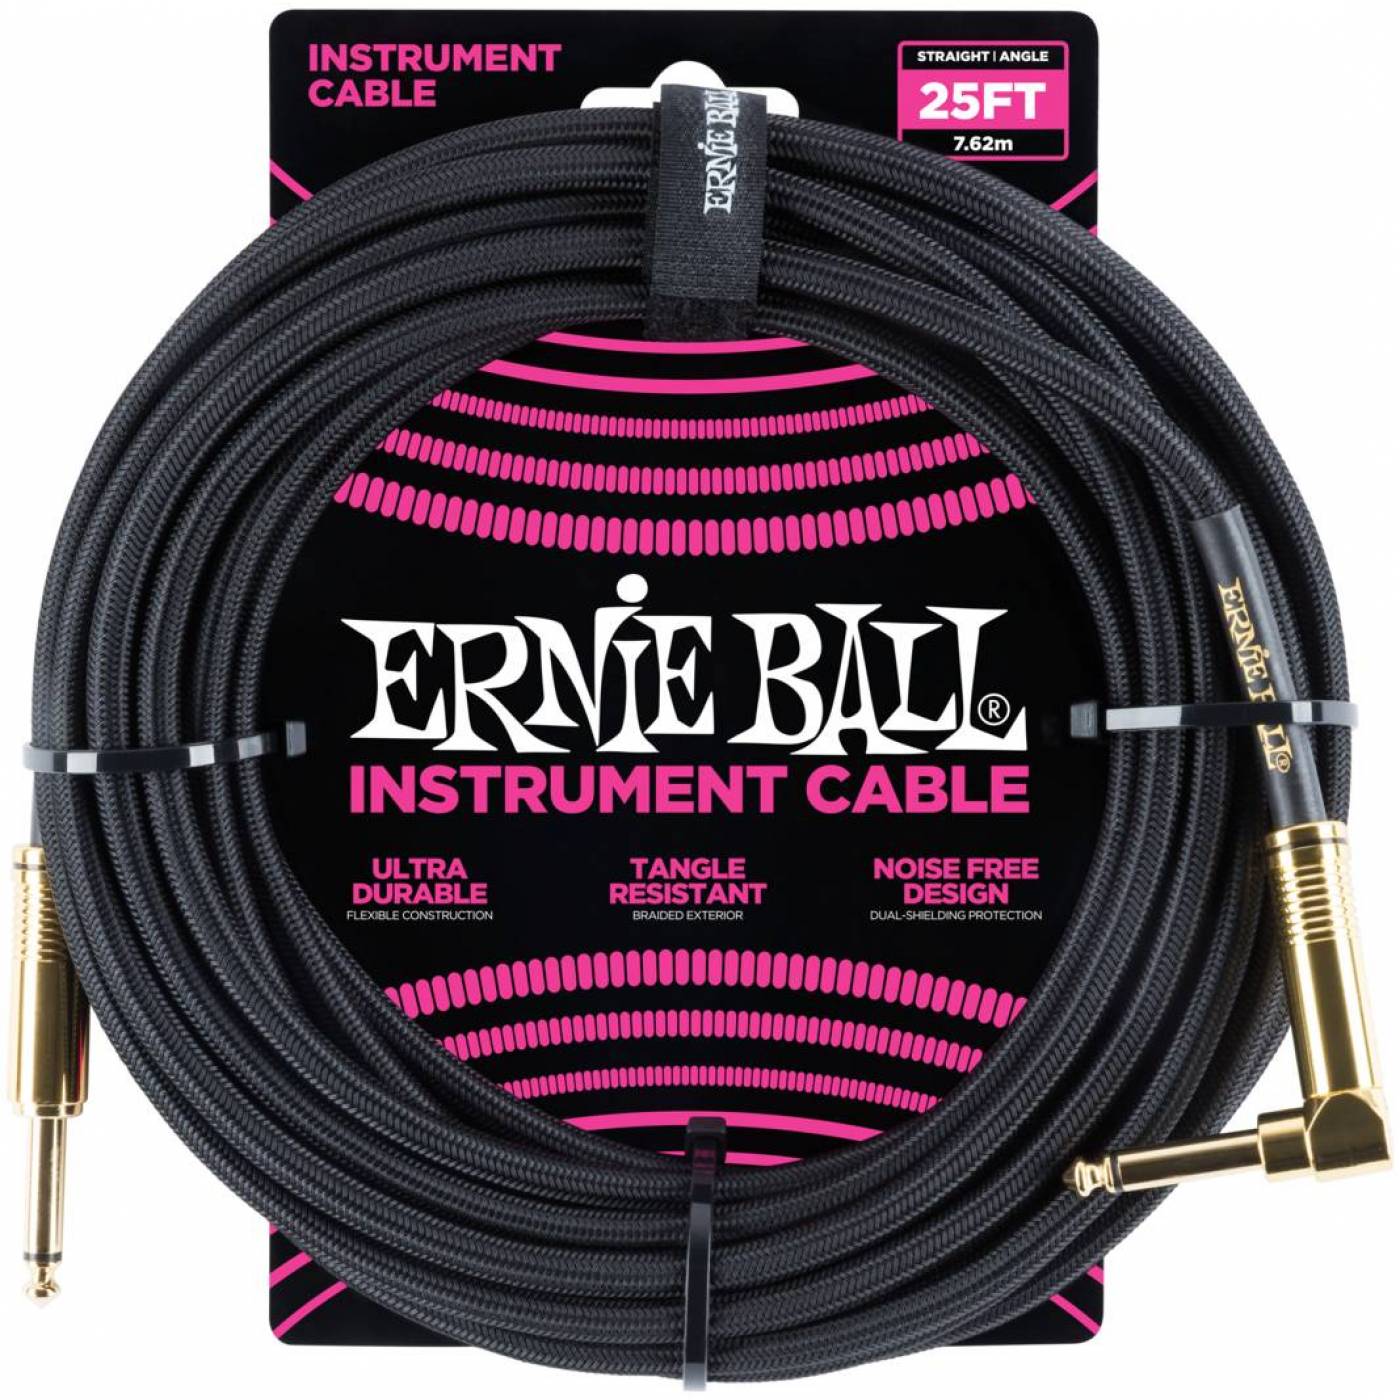 ERNIE BALL 6058 - кабель инструментальный, прямой / угловой джеки, длина 7,62м, цвет чёрный